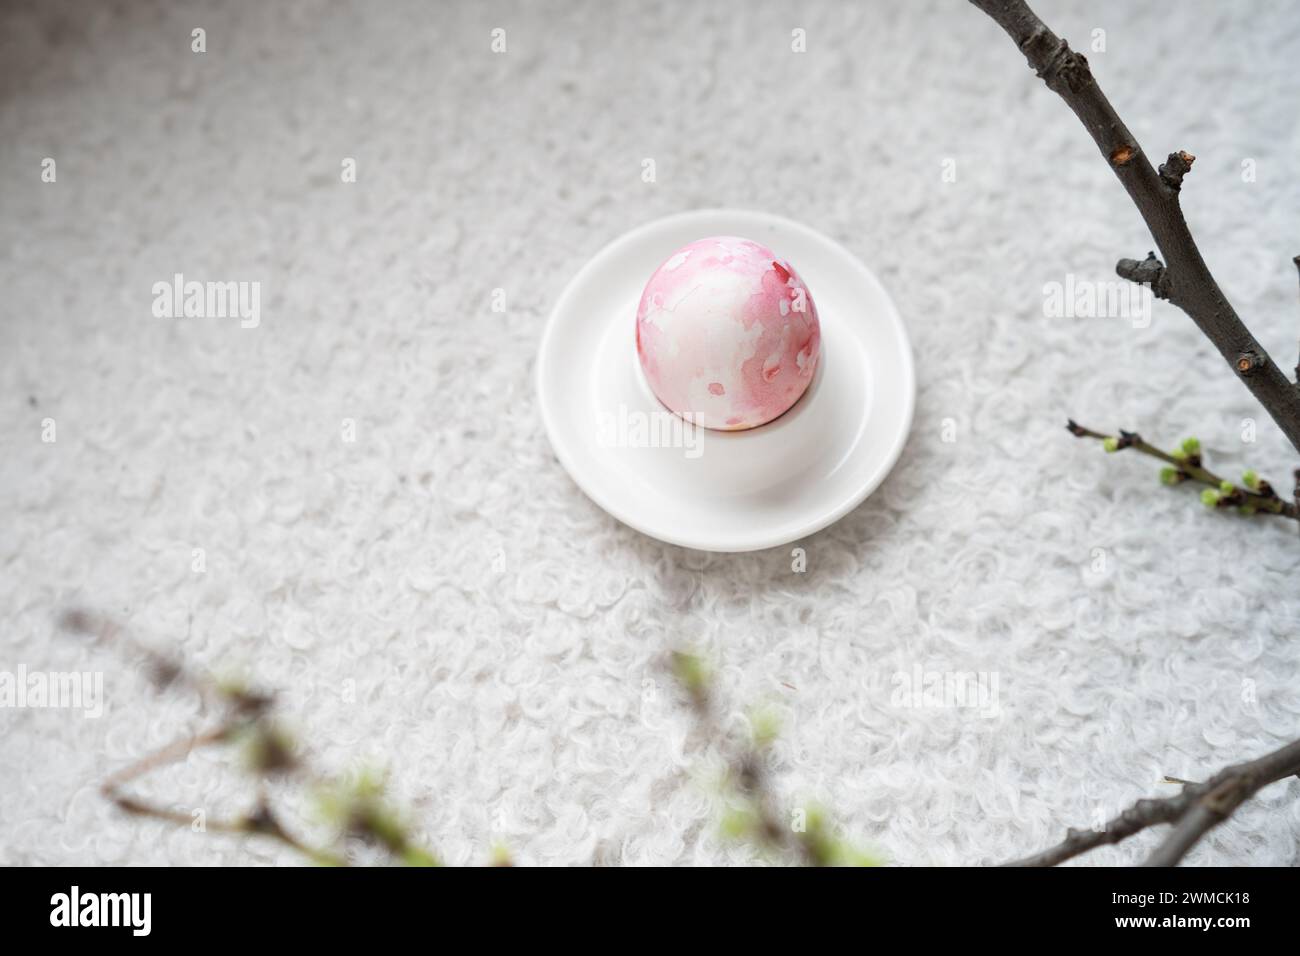 Vue aérienne d'un œuf de Pâques peint rose dans un coquetier sur une table à côté d'un ranch de printemps Banque D'Images